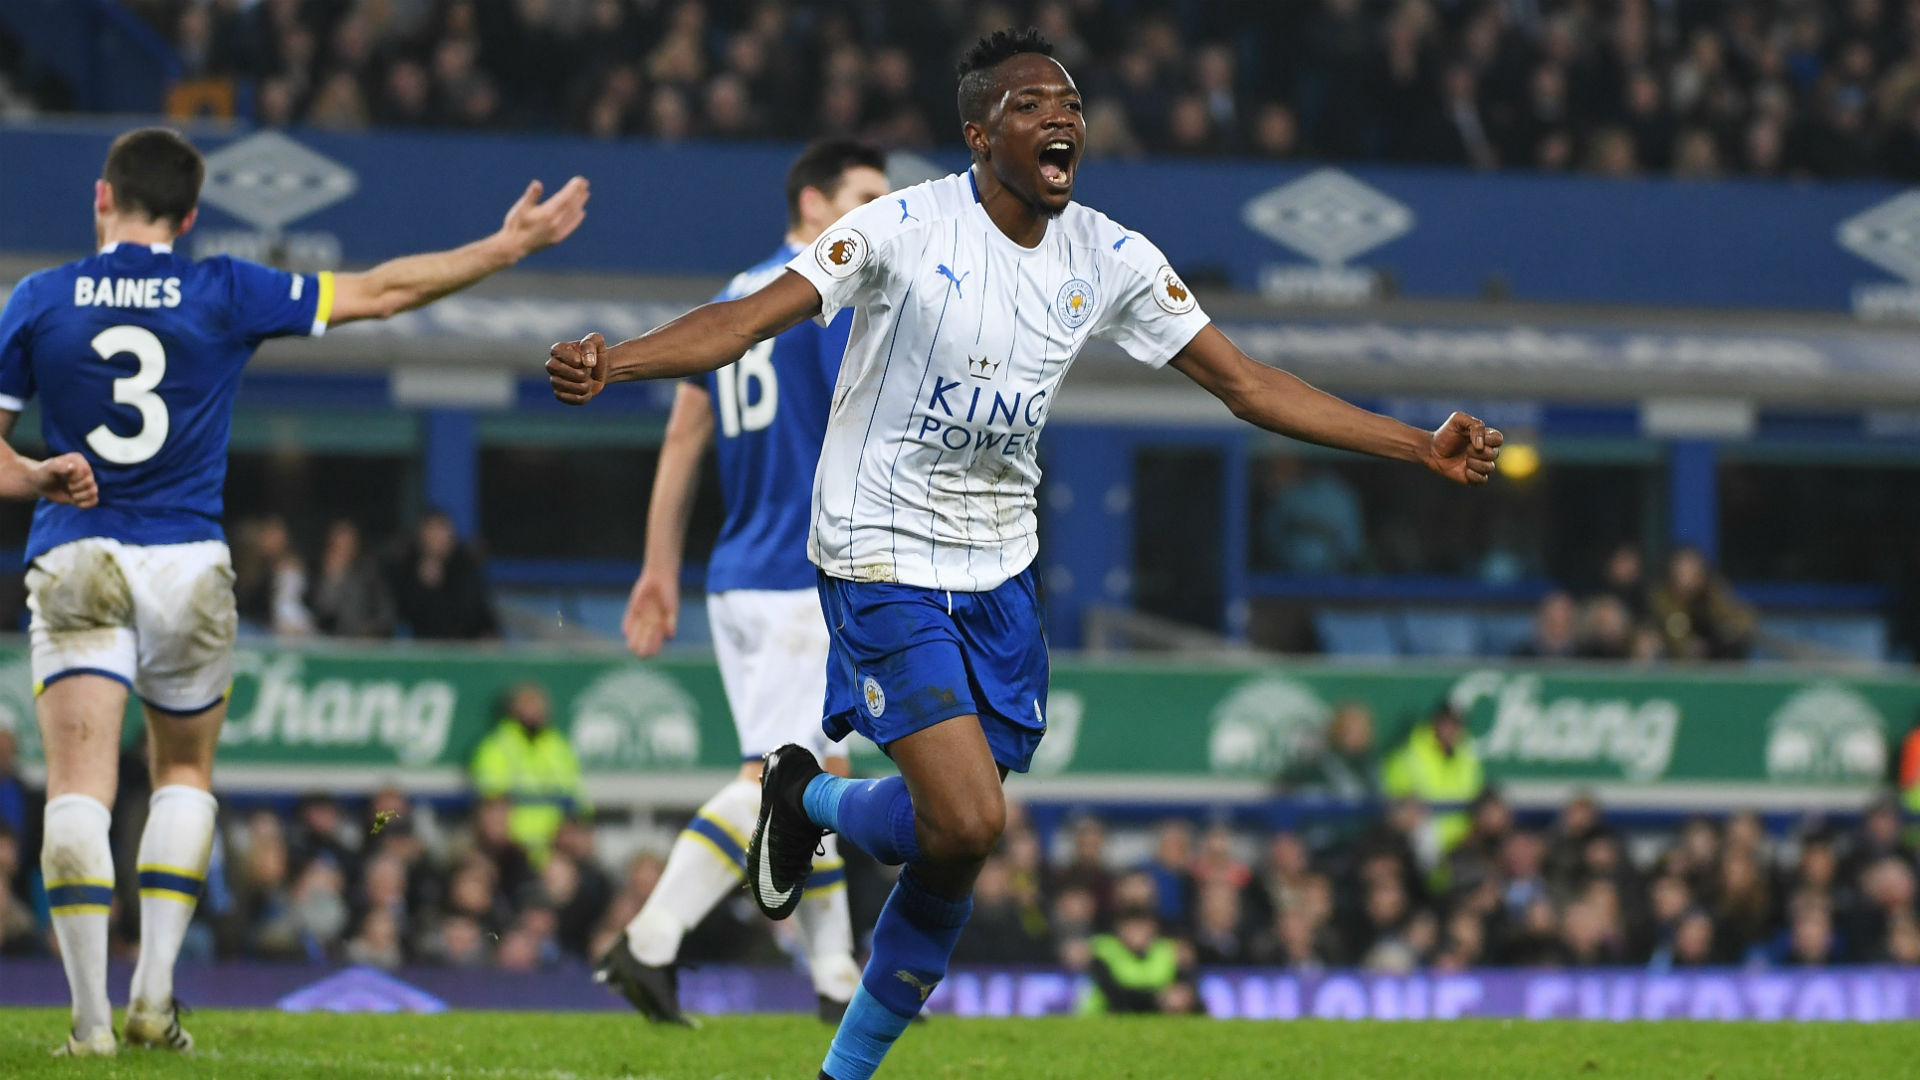 Musa celebra un gol ante el Everton